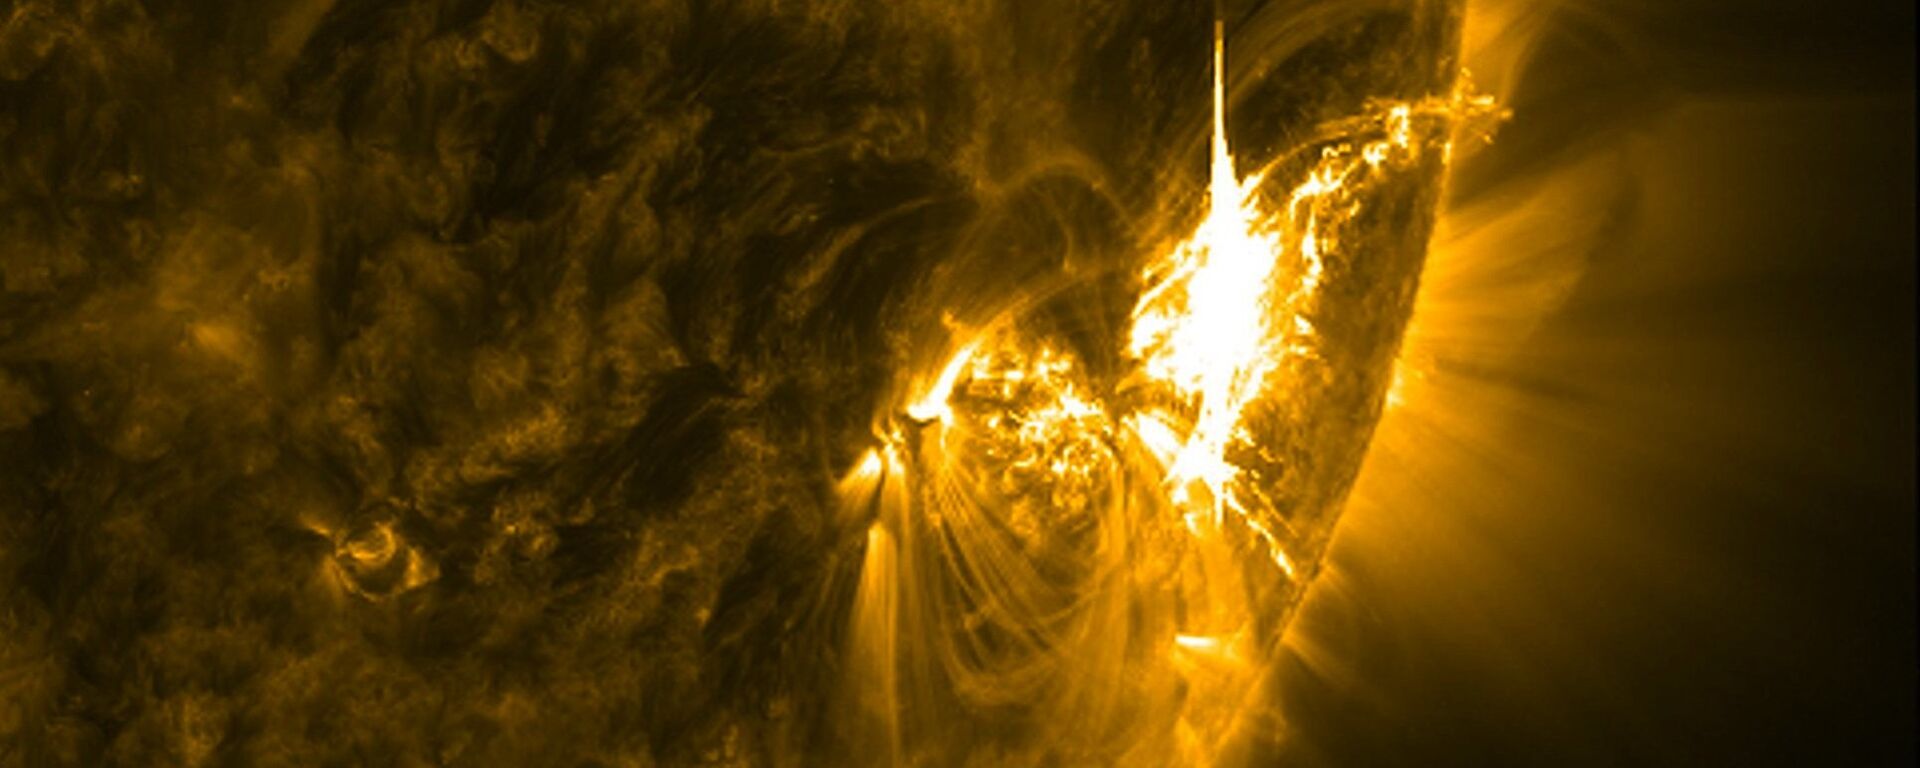 გეომაგნიტური ქარიშხალი მზეზე - Sputnik საქართველო, 1920, 25.06.2020